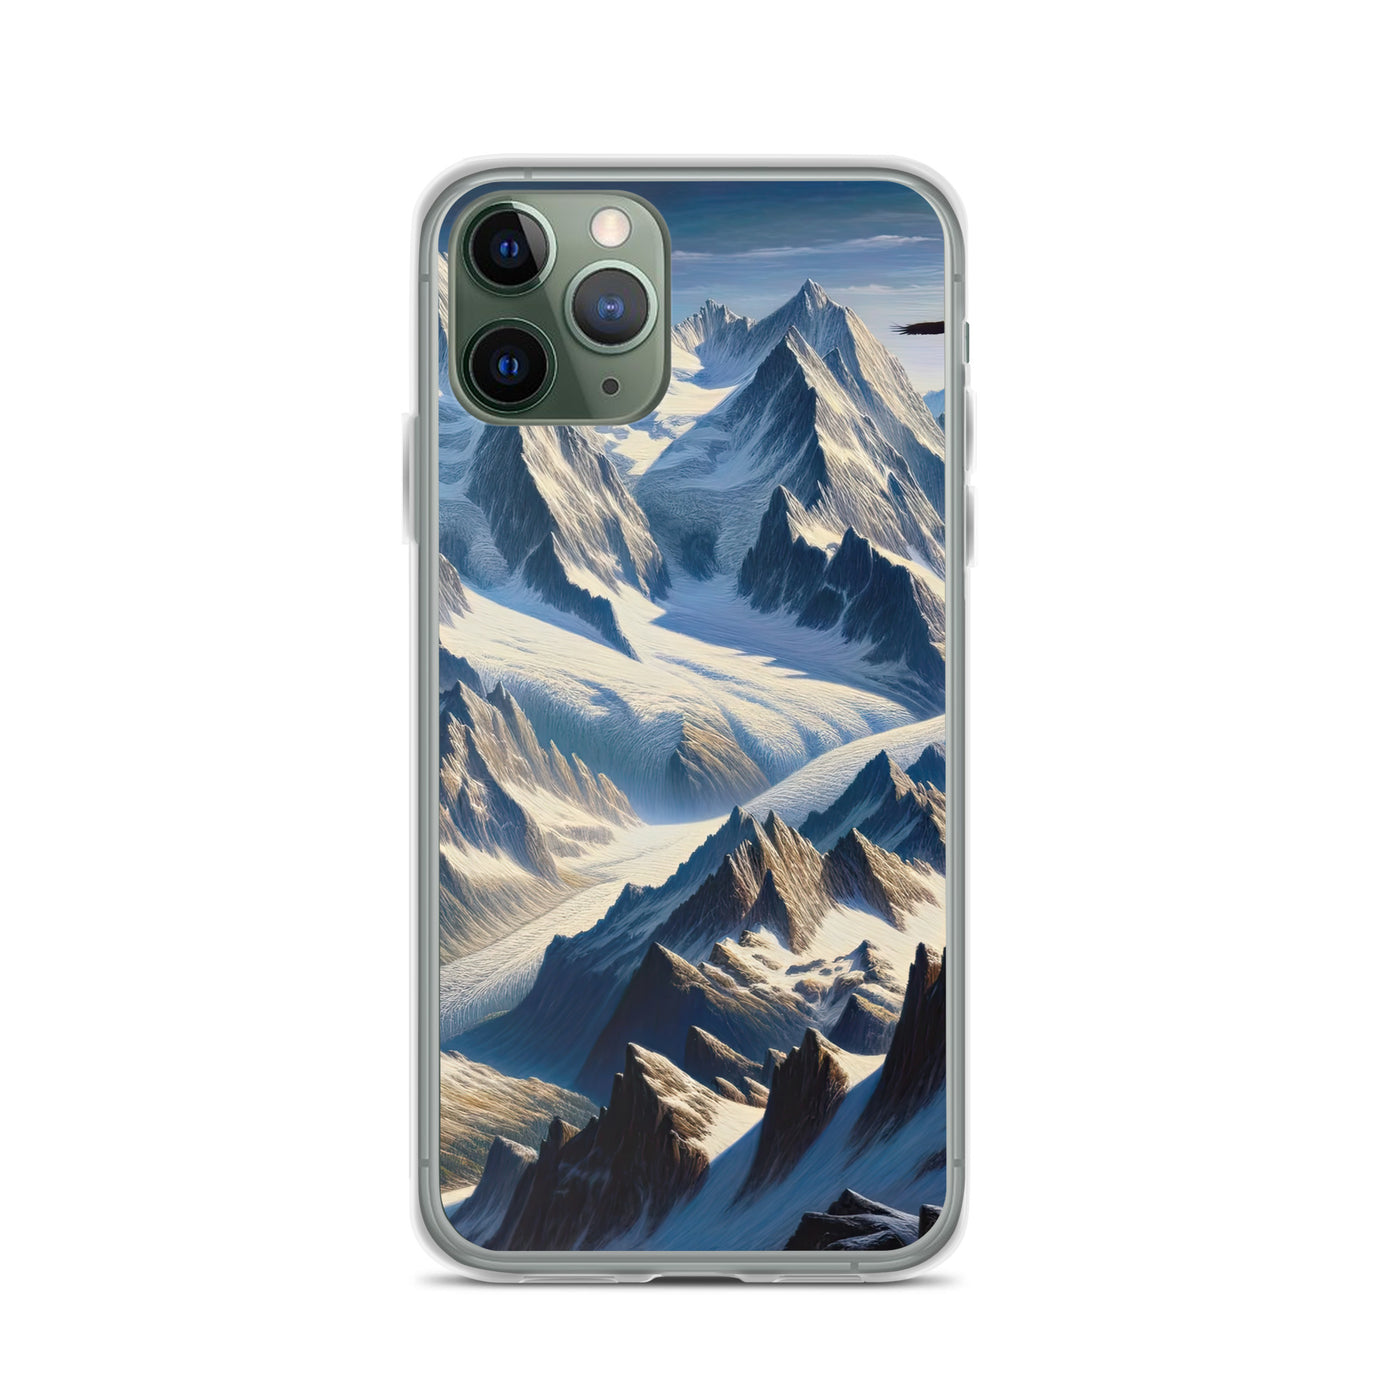 Ölgemälde der Alpen mit hervorgehobenen zerklüfteten Geländen im Licht und Schatten - iPhone Schutzhülle (durchsichtig) berge xxx yyy zzz iPhone 11 Pro